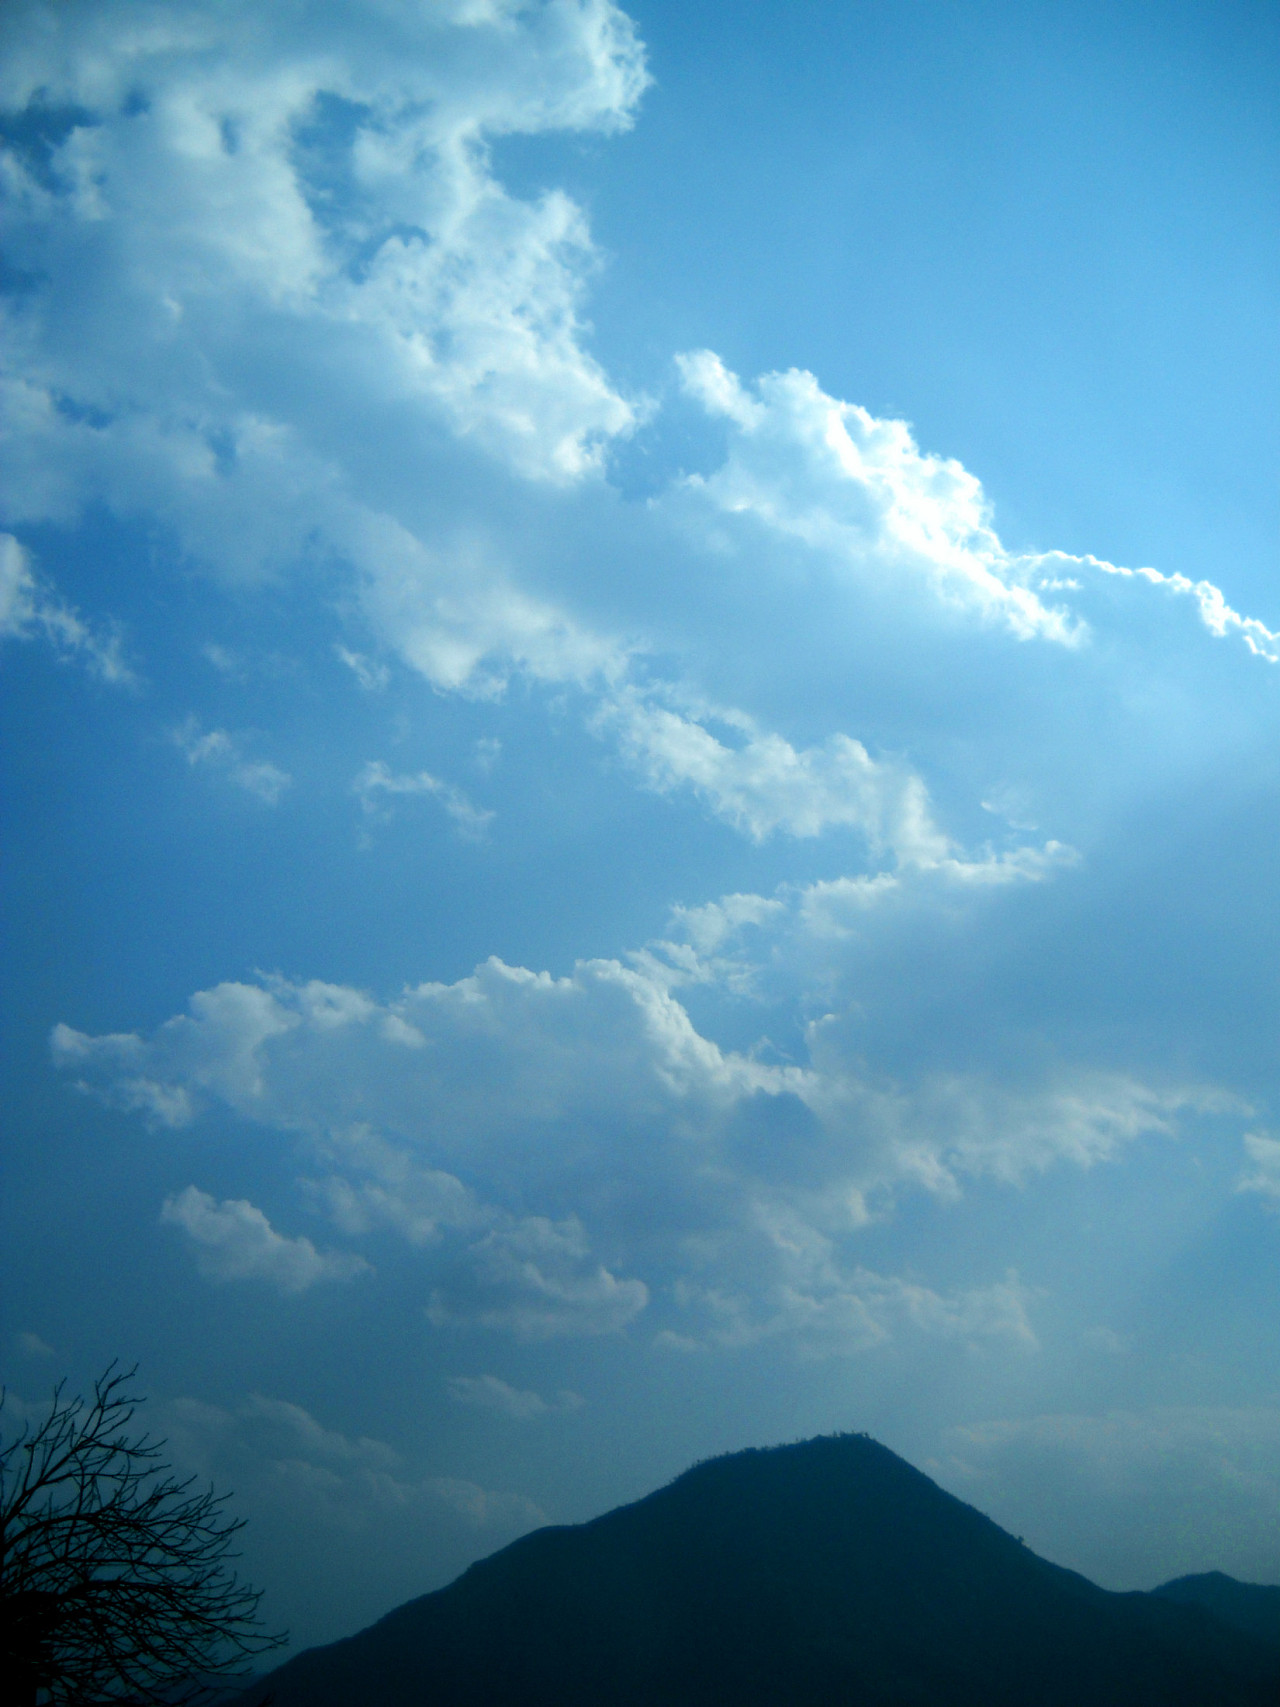 蓝天白云黄昏的天空背景高清图片素材免费下载-高清图片-php中文网源码